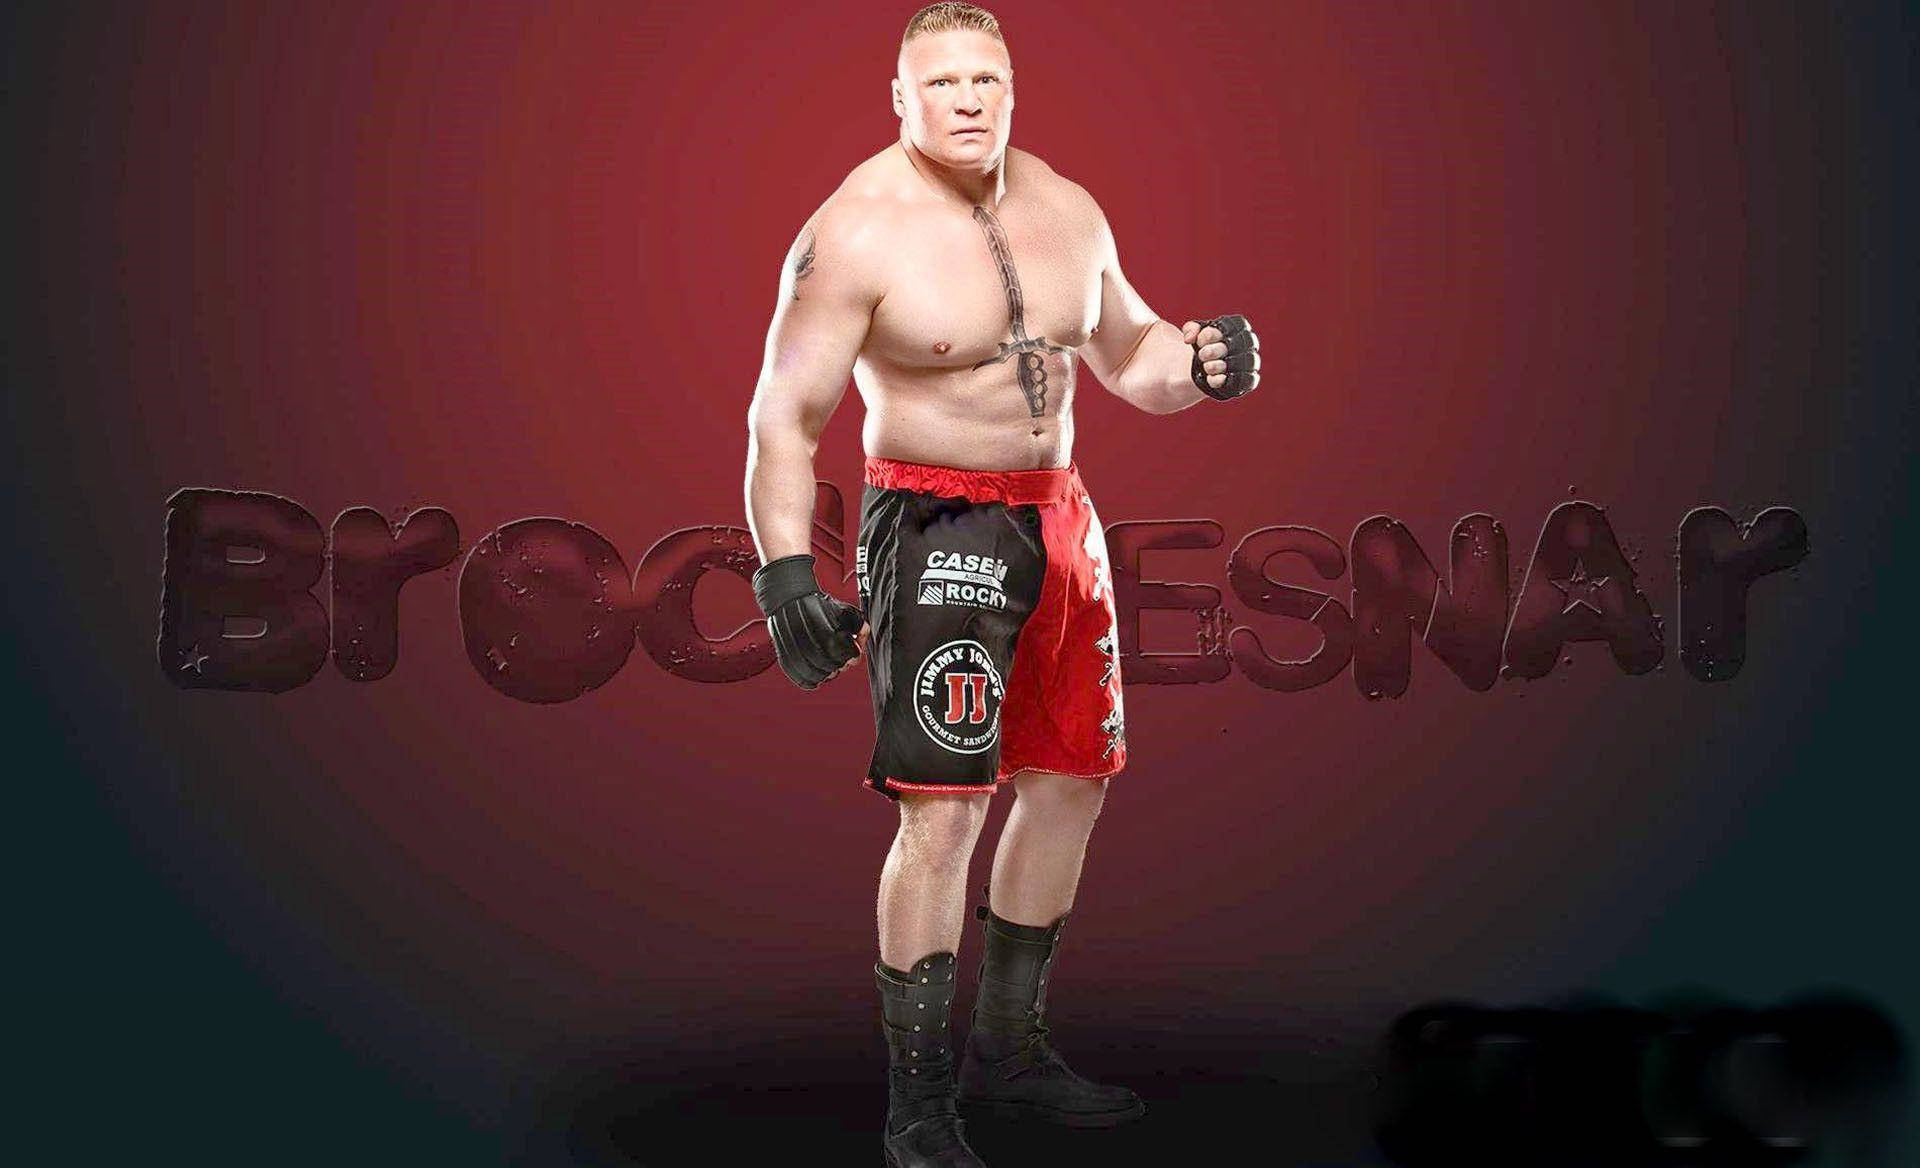 Free Brock Lesnar Wallpaper Downloads, [100+] Brock Lesnar Wallpapers for  FREE 